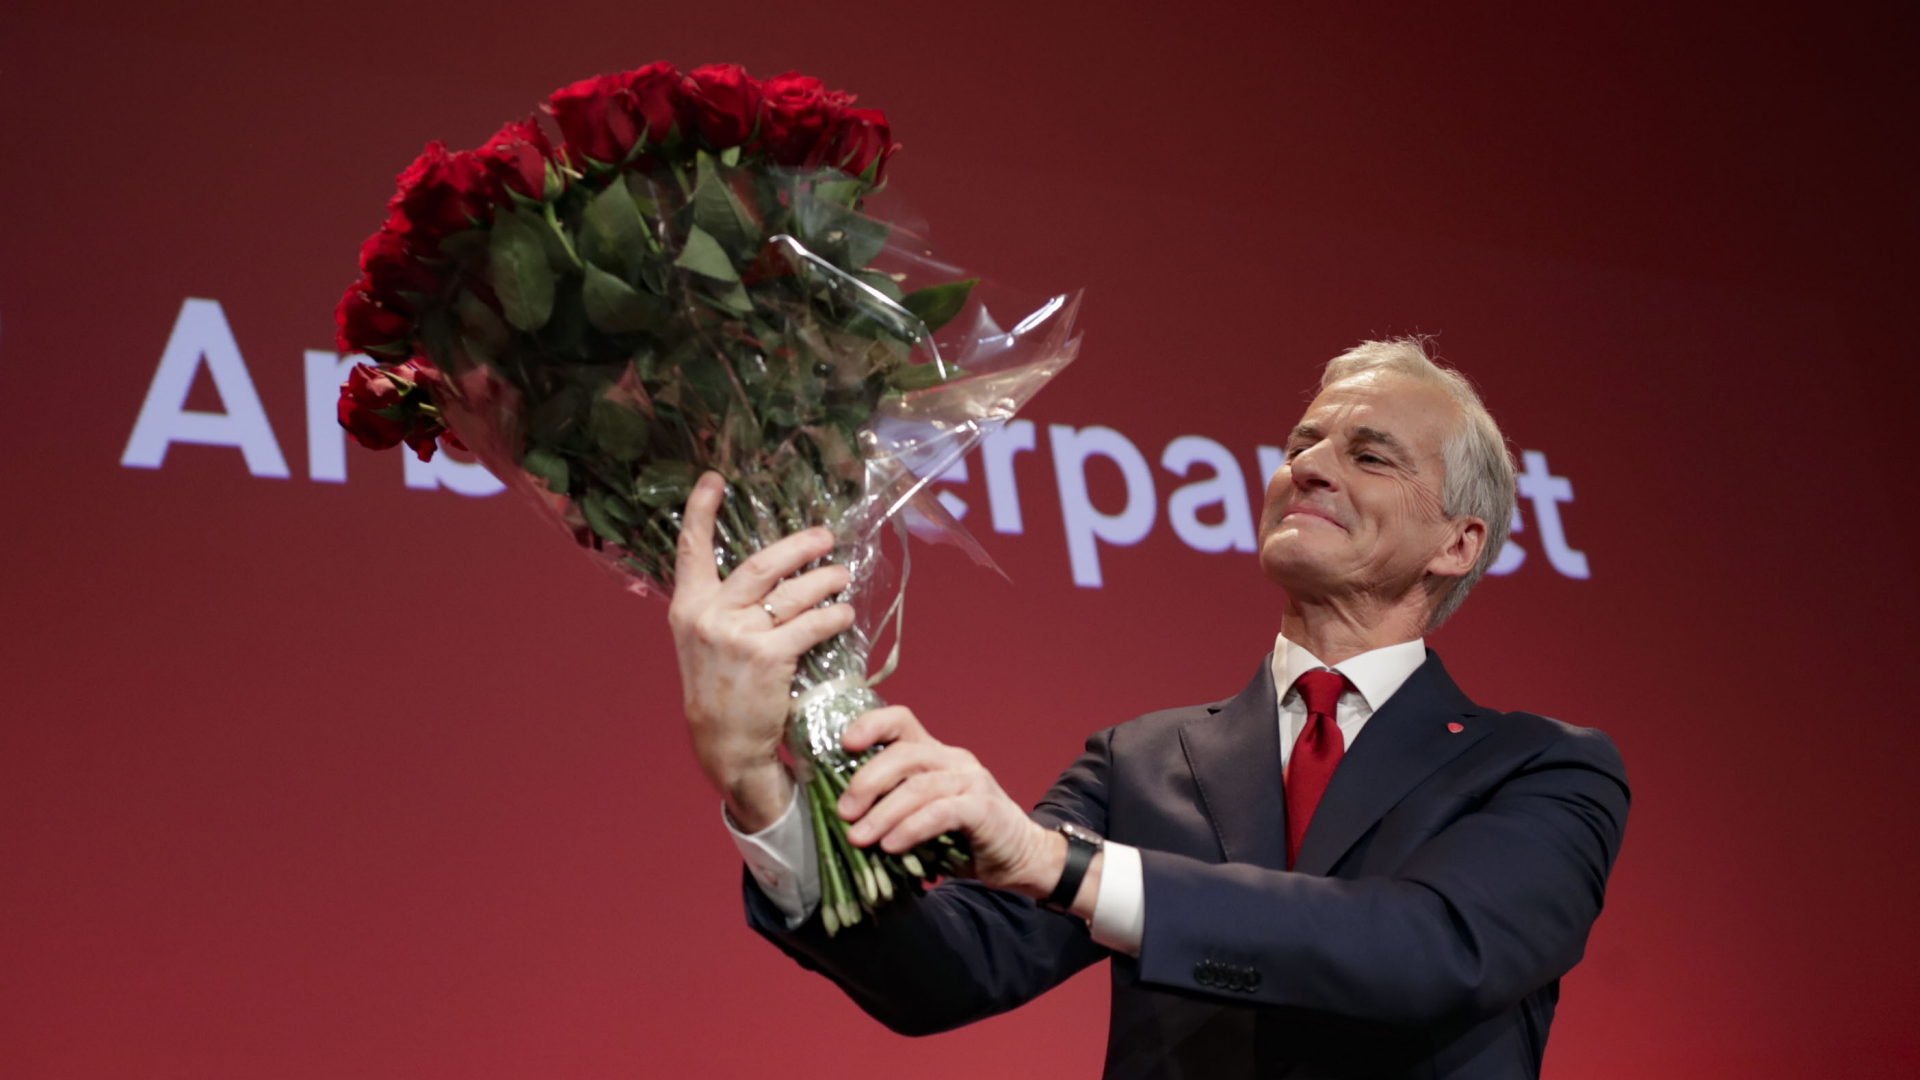 Der Vorsitzende der Arbeiterpartei, Jonas Gahr Støre, hält einen Strauß roter Rosen bei der Wahlmahnwache der Arbeiterpartei für die Parlamentswahlen 2021 im Volkshaus in Oslo, Norwegen.  | dpa